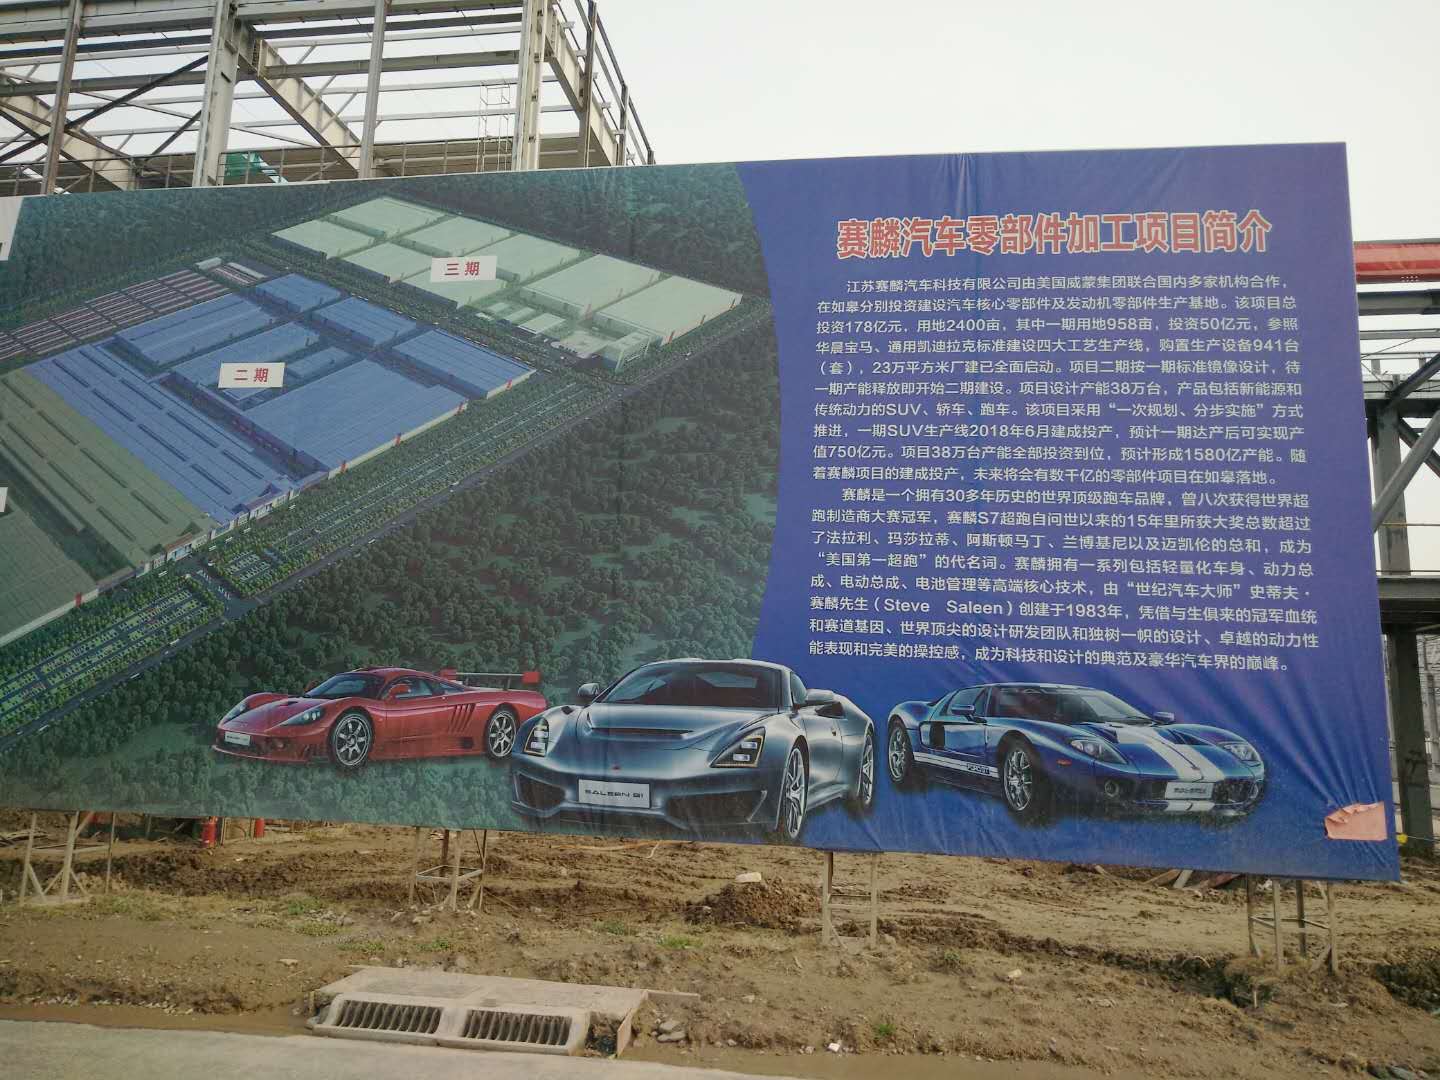 江苏赛麟汽车科技有限公司50m排气筒工程